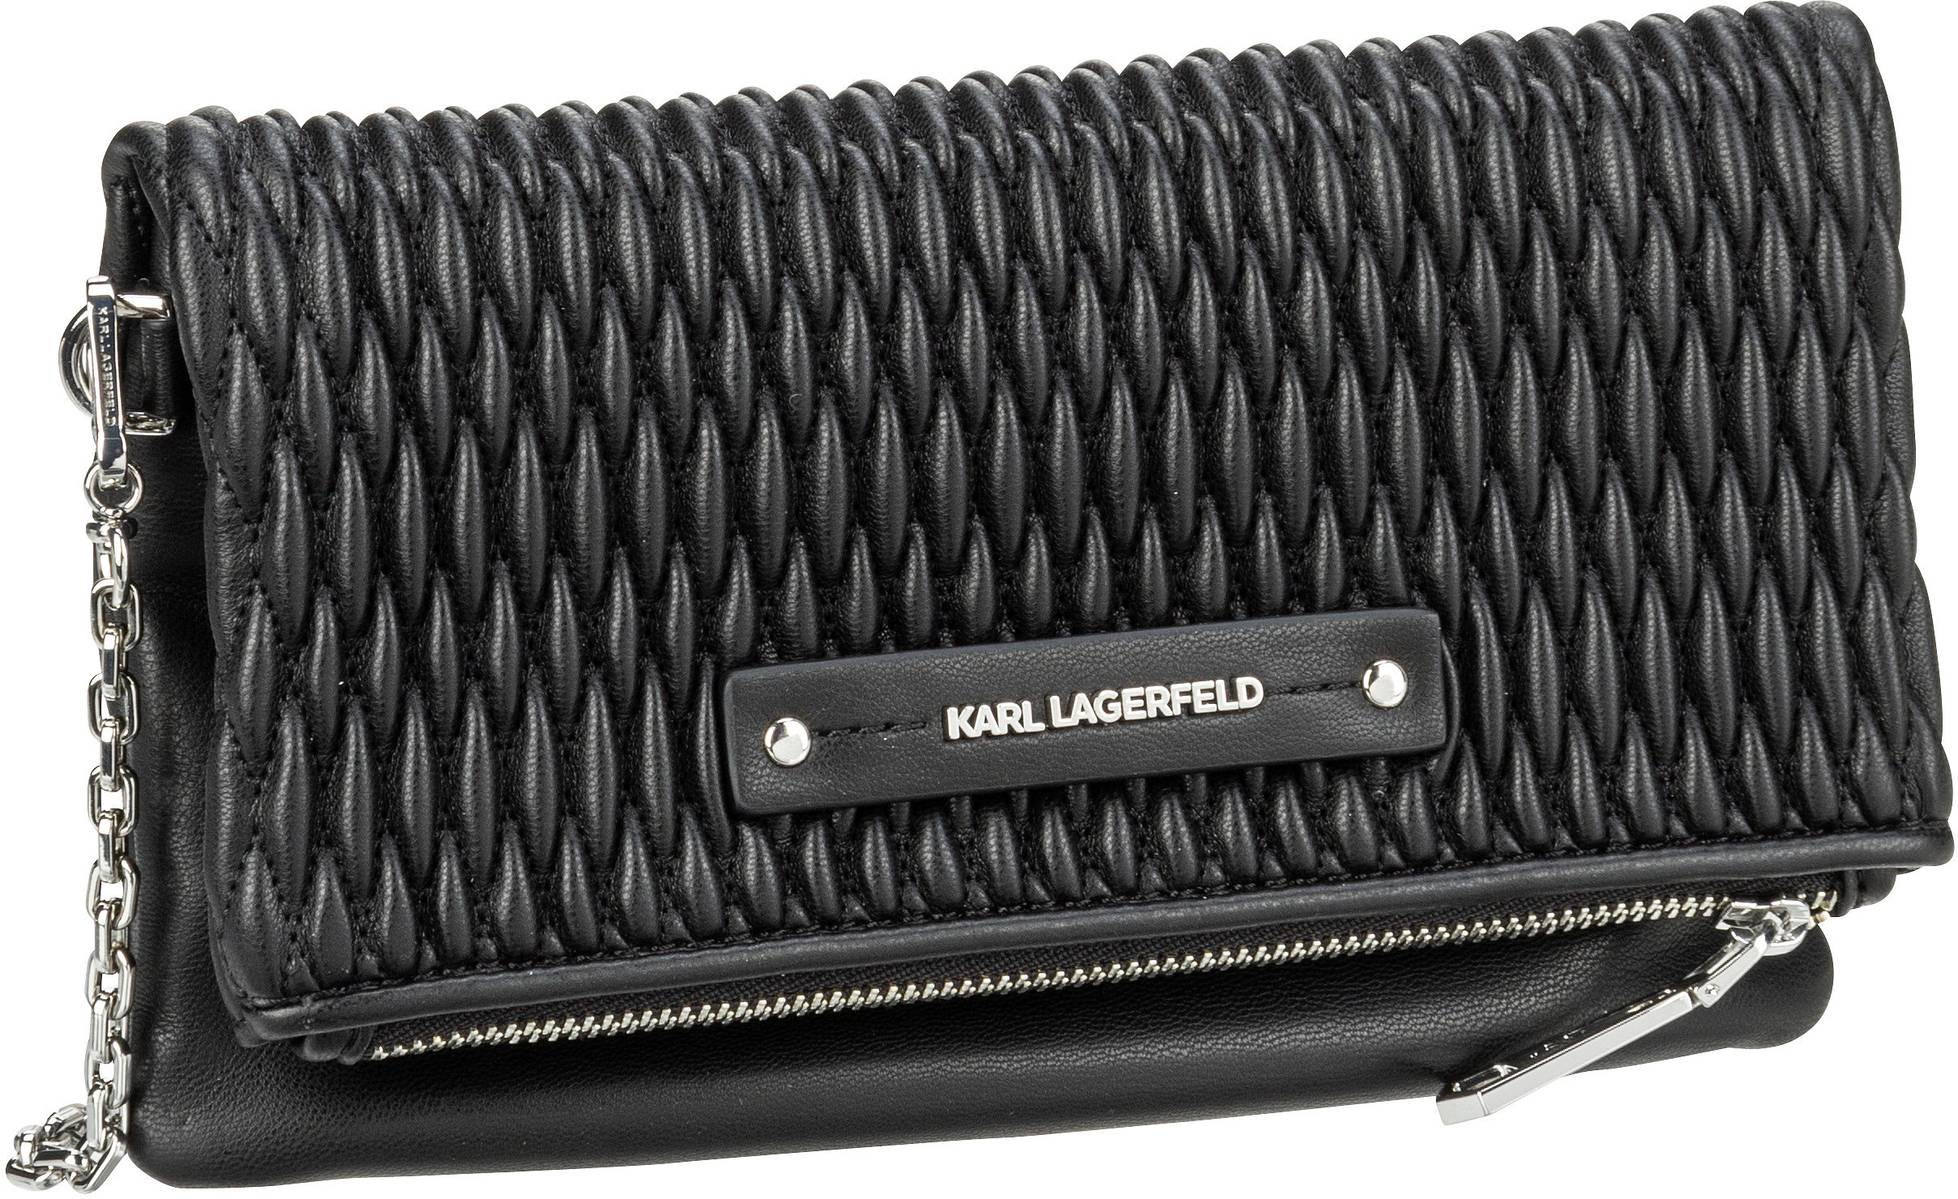 Karl Lagerfeld Abendtasche Clutch K Kushion Quilted Wallet On Chain Black (0.9 Liter)  - Onlineshop Taschenkaufhaus